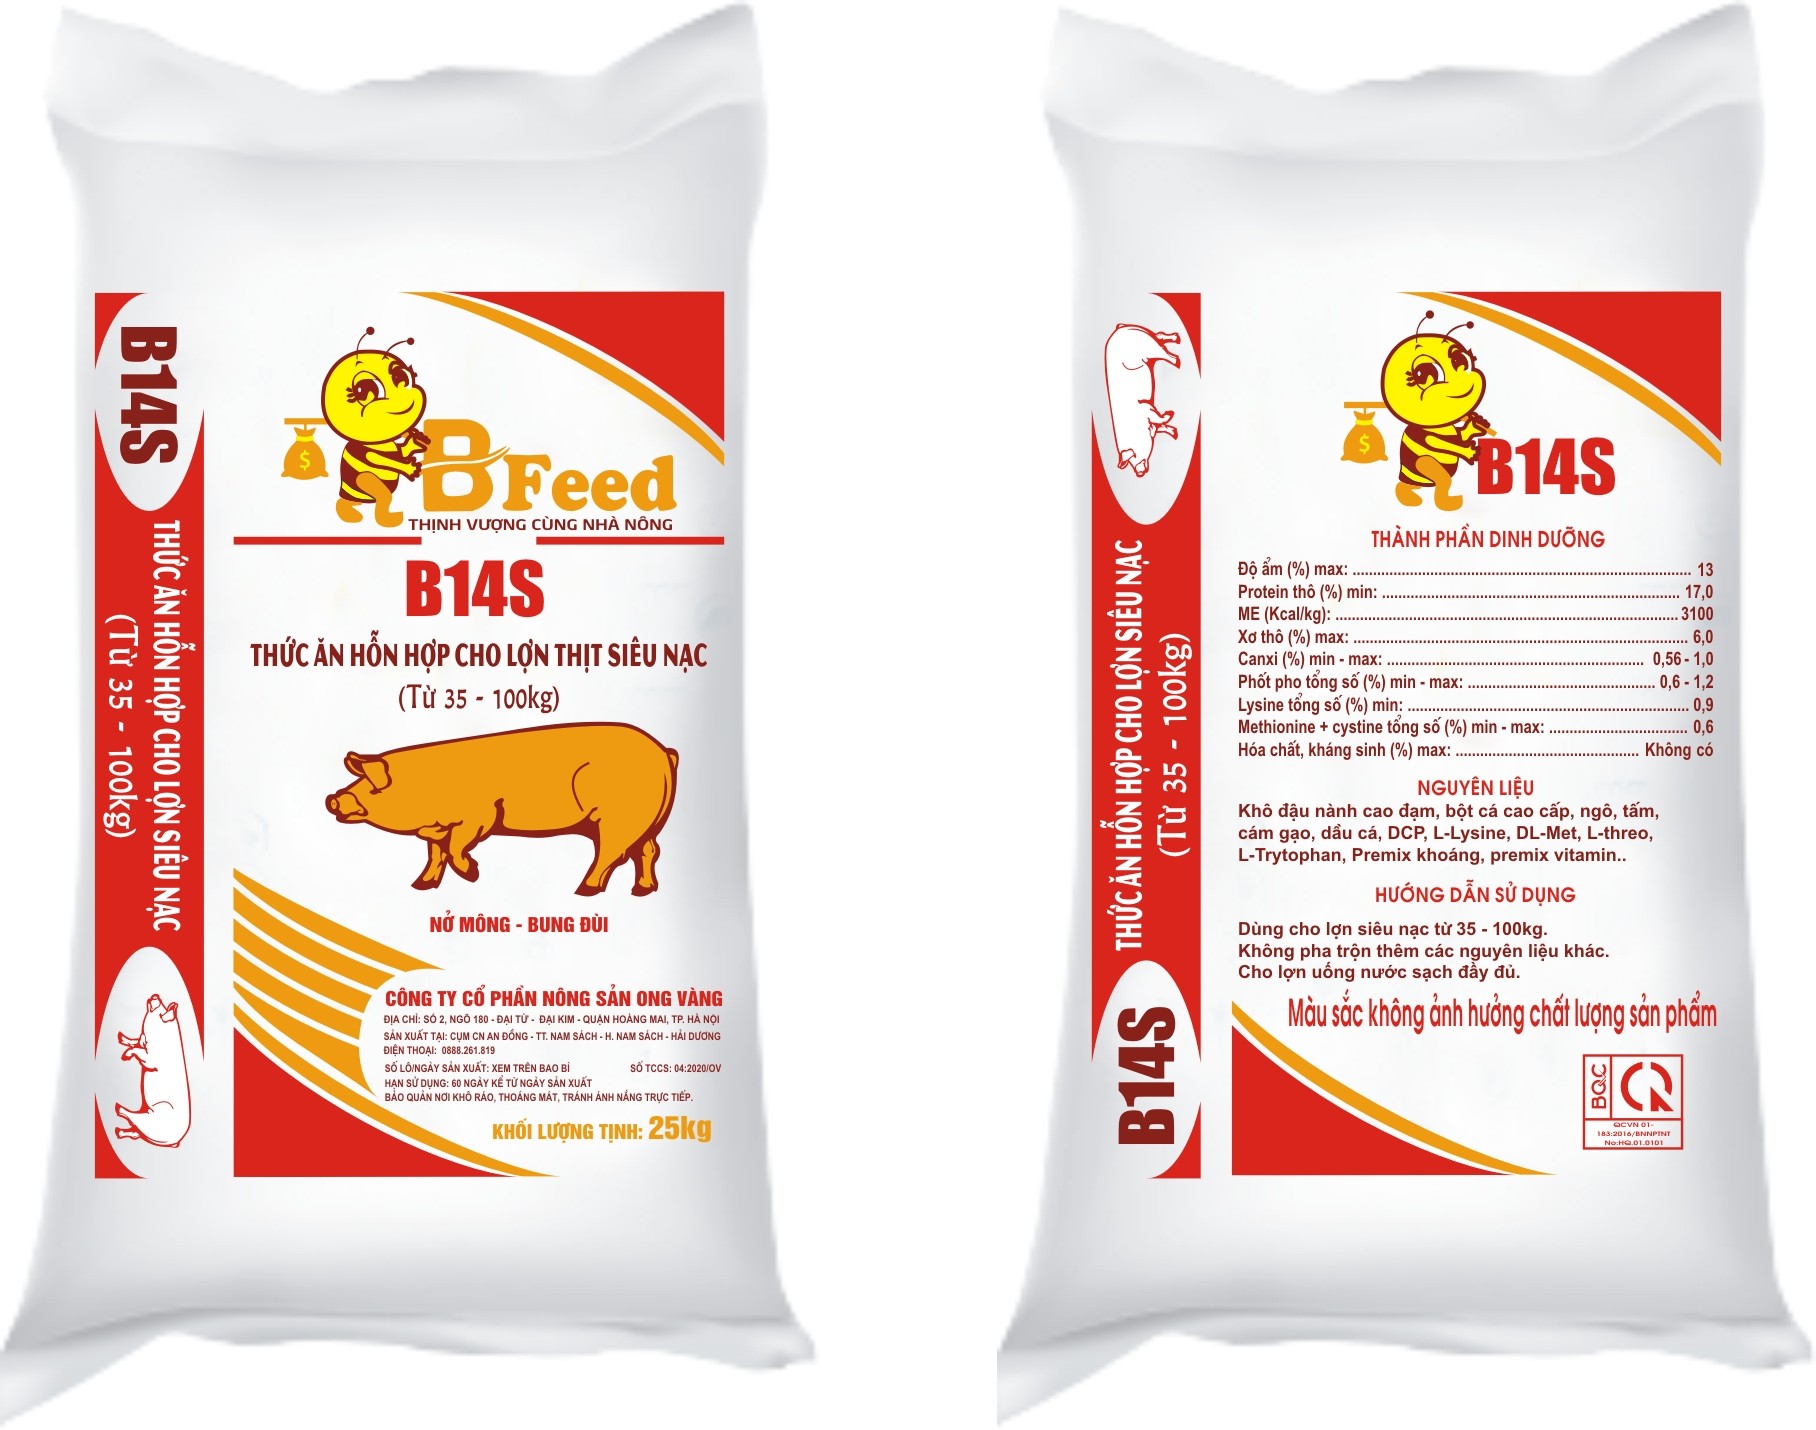 B14S - Thức ăn hỗn hợp cho lợn thịt siêu nạc (Từ 35kg - 100kg)